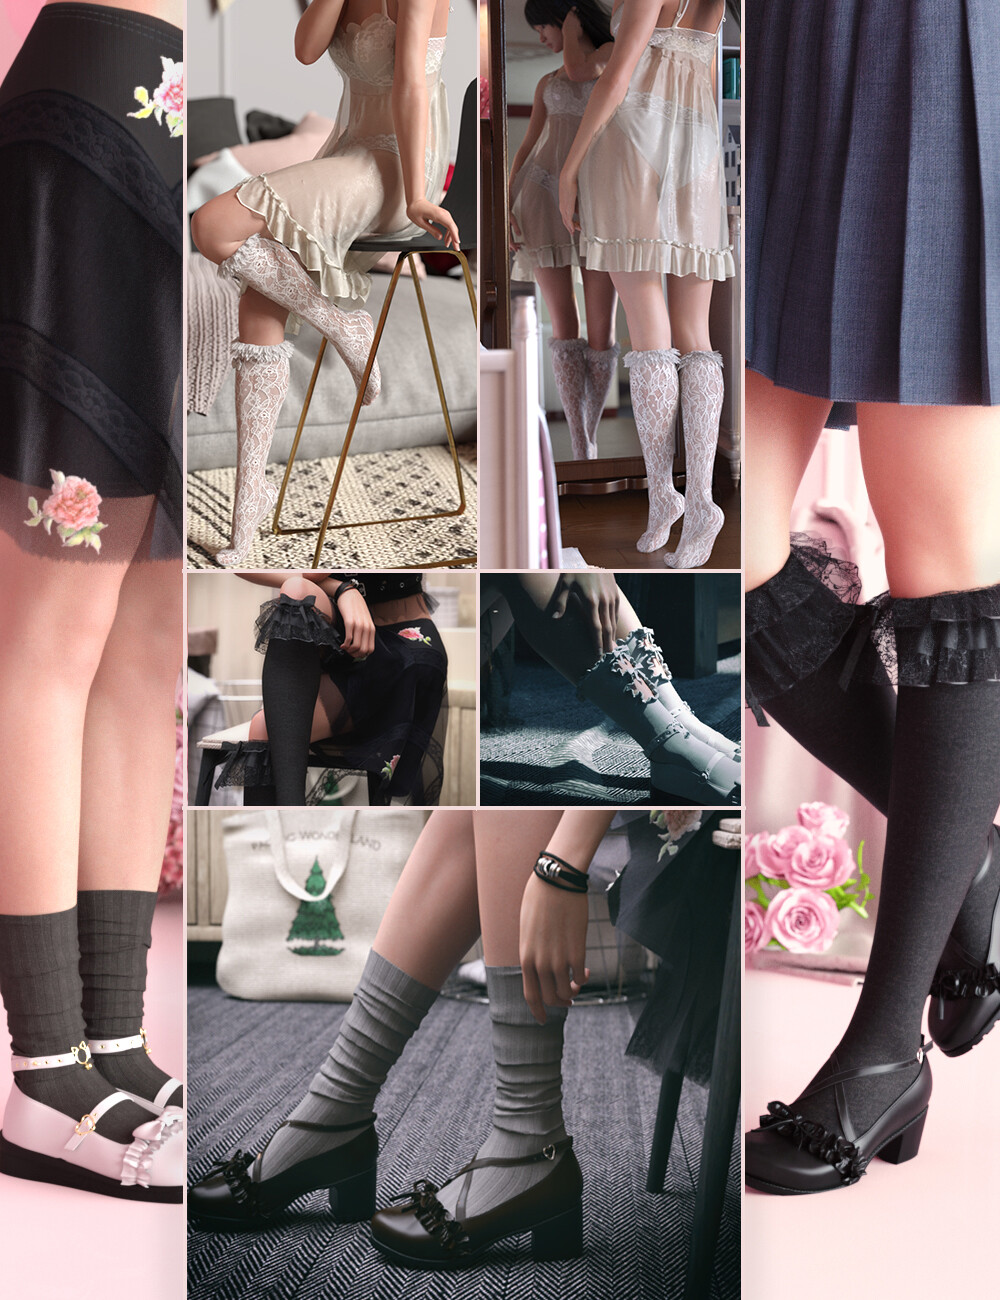 KuJ Kawaii Fashion Socks and Shoes Collection II [REPOST]